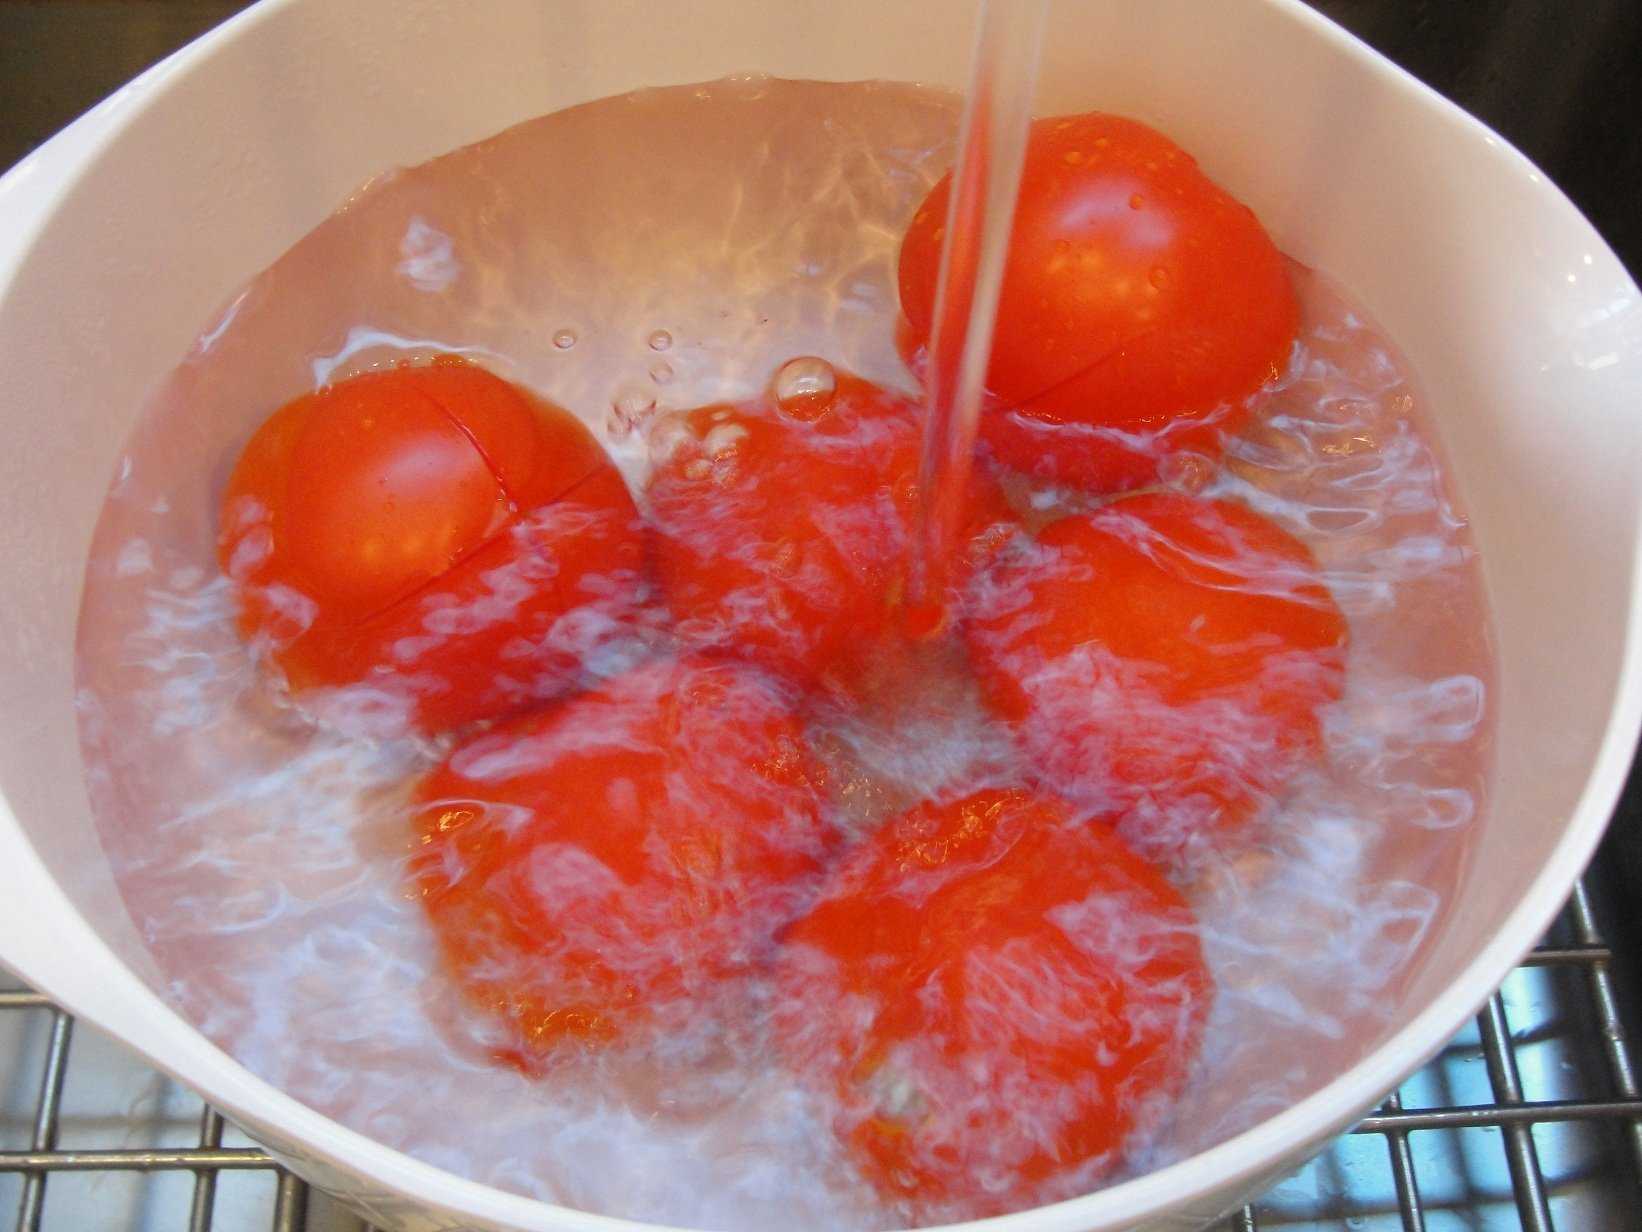 Как снять кожуру с помидора: очистить быстро от шкурки, бланшировка кипятком и в микроволновке, видео